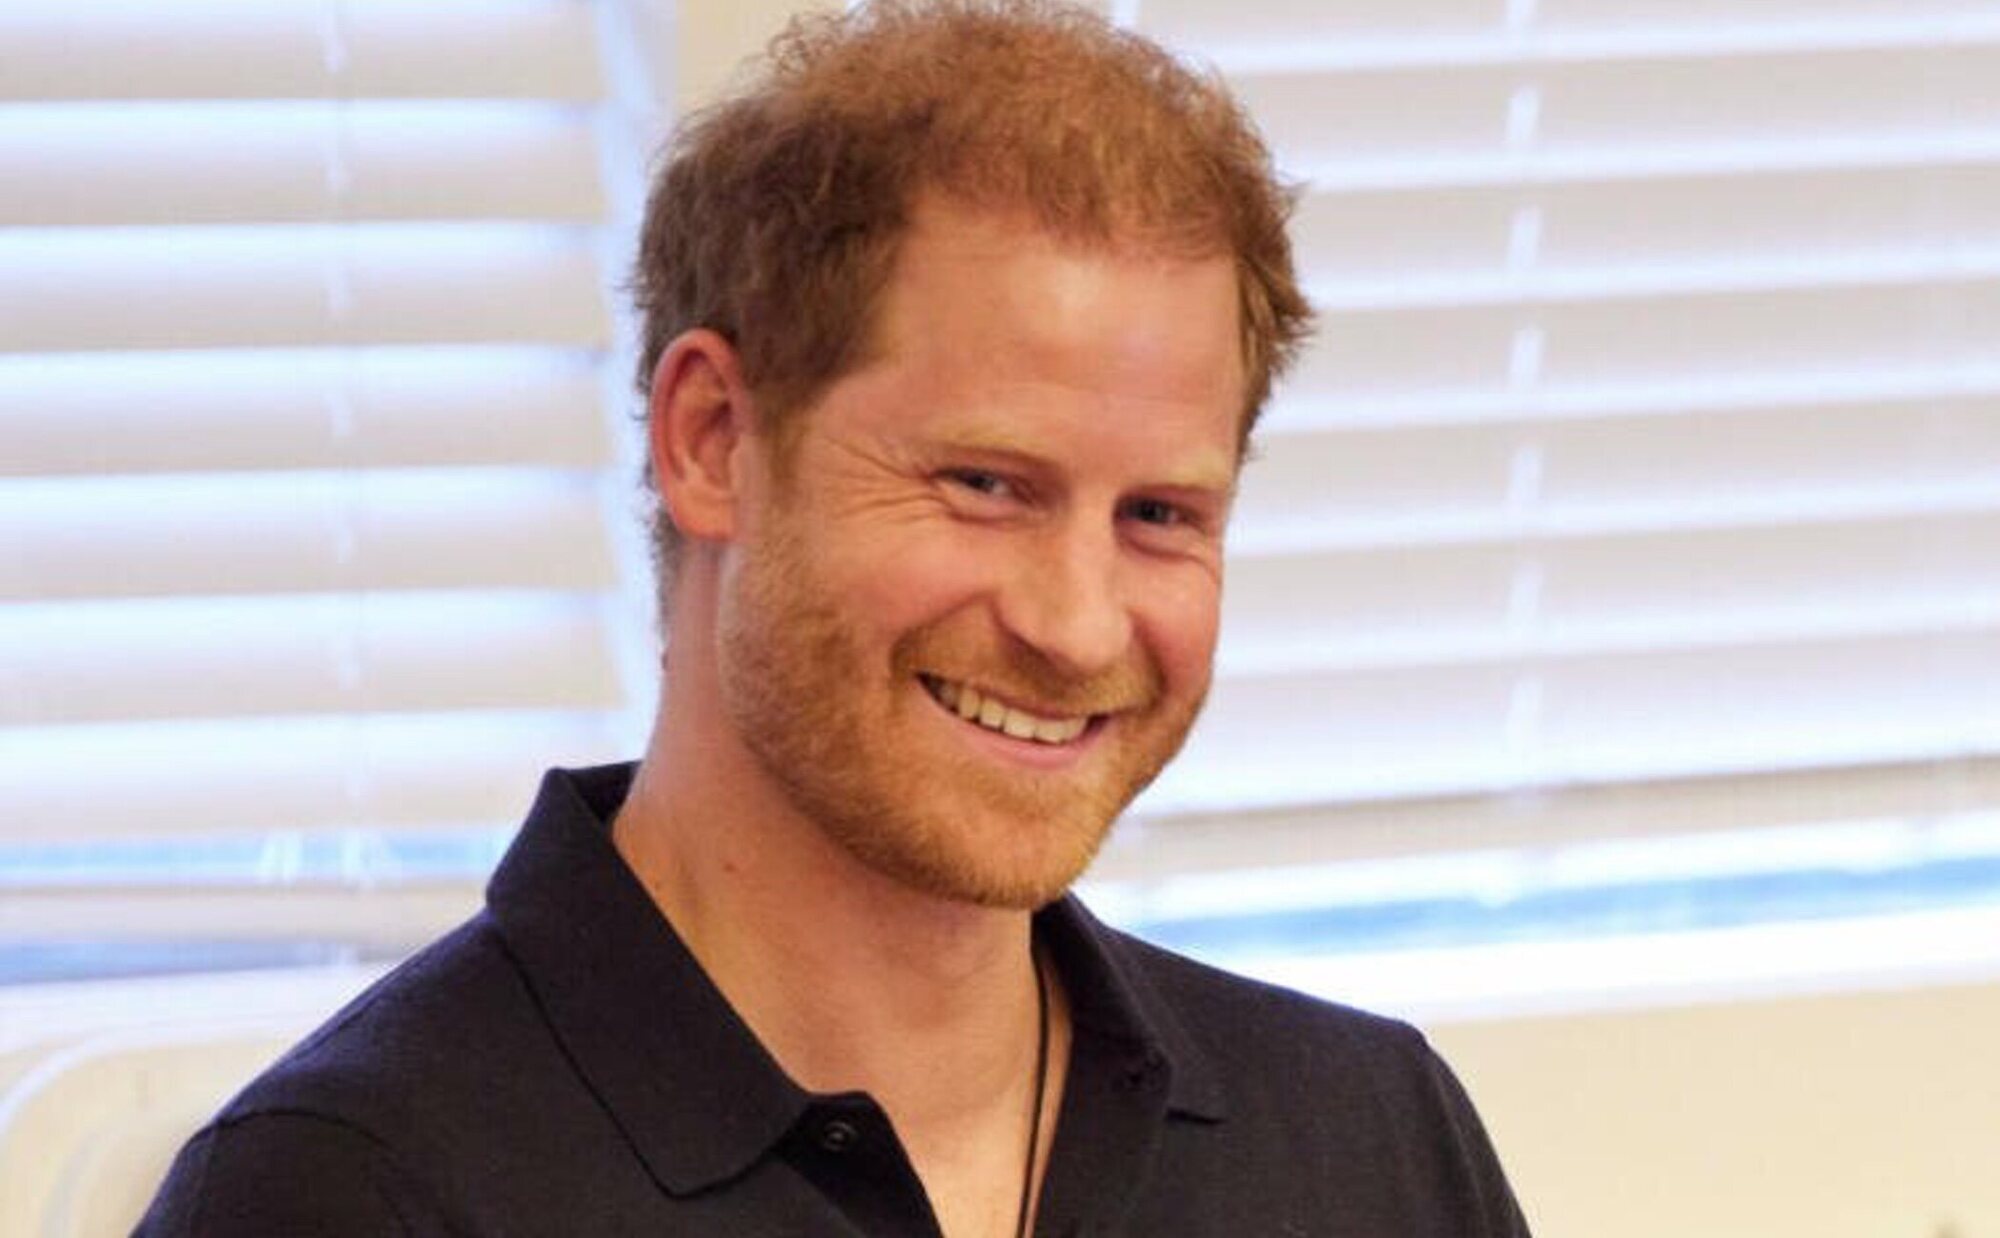 La prensa británica se burla del Photoshop en una foto en el pelo del Príncipe Harry, que aparece sin calvicie